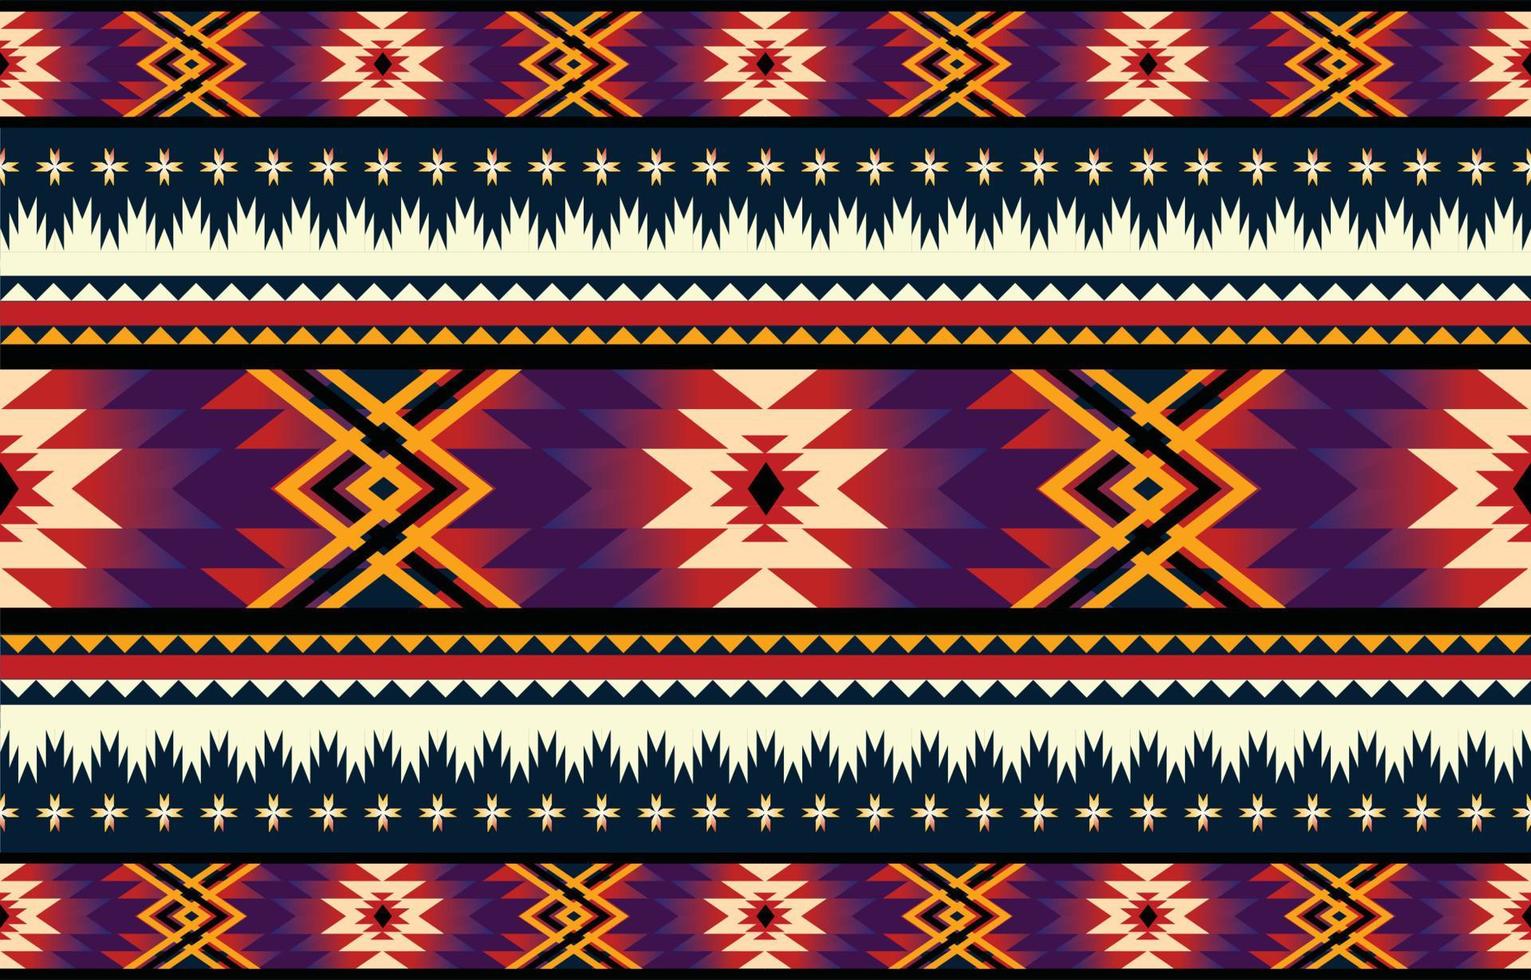 etnisch meetkundig oosters en western patroon. Amerikaans, azteekse, motief, tribal, textiel patroon. ontwerp voor stof, gordijn, achtergrond, tapijt, behang, kleding,verpakking,tegel.textiel motief vector